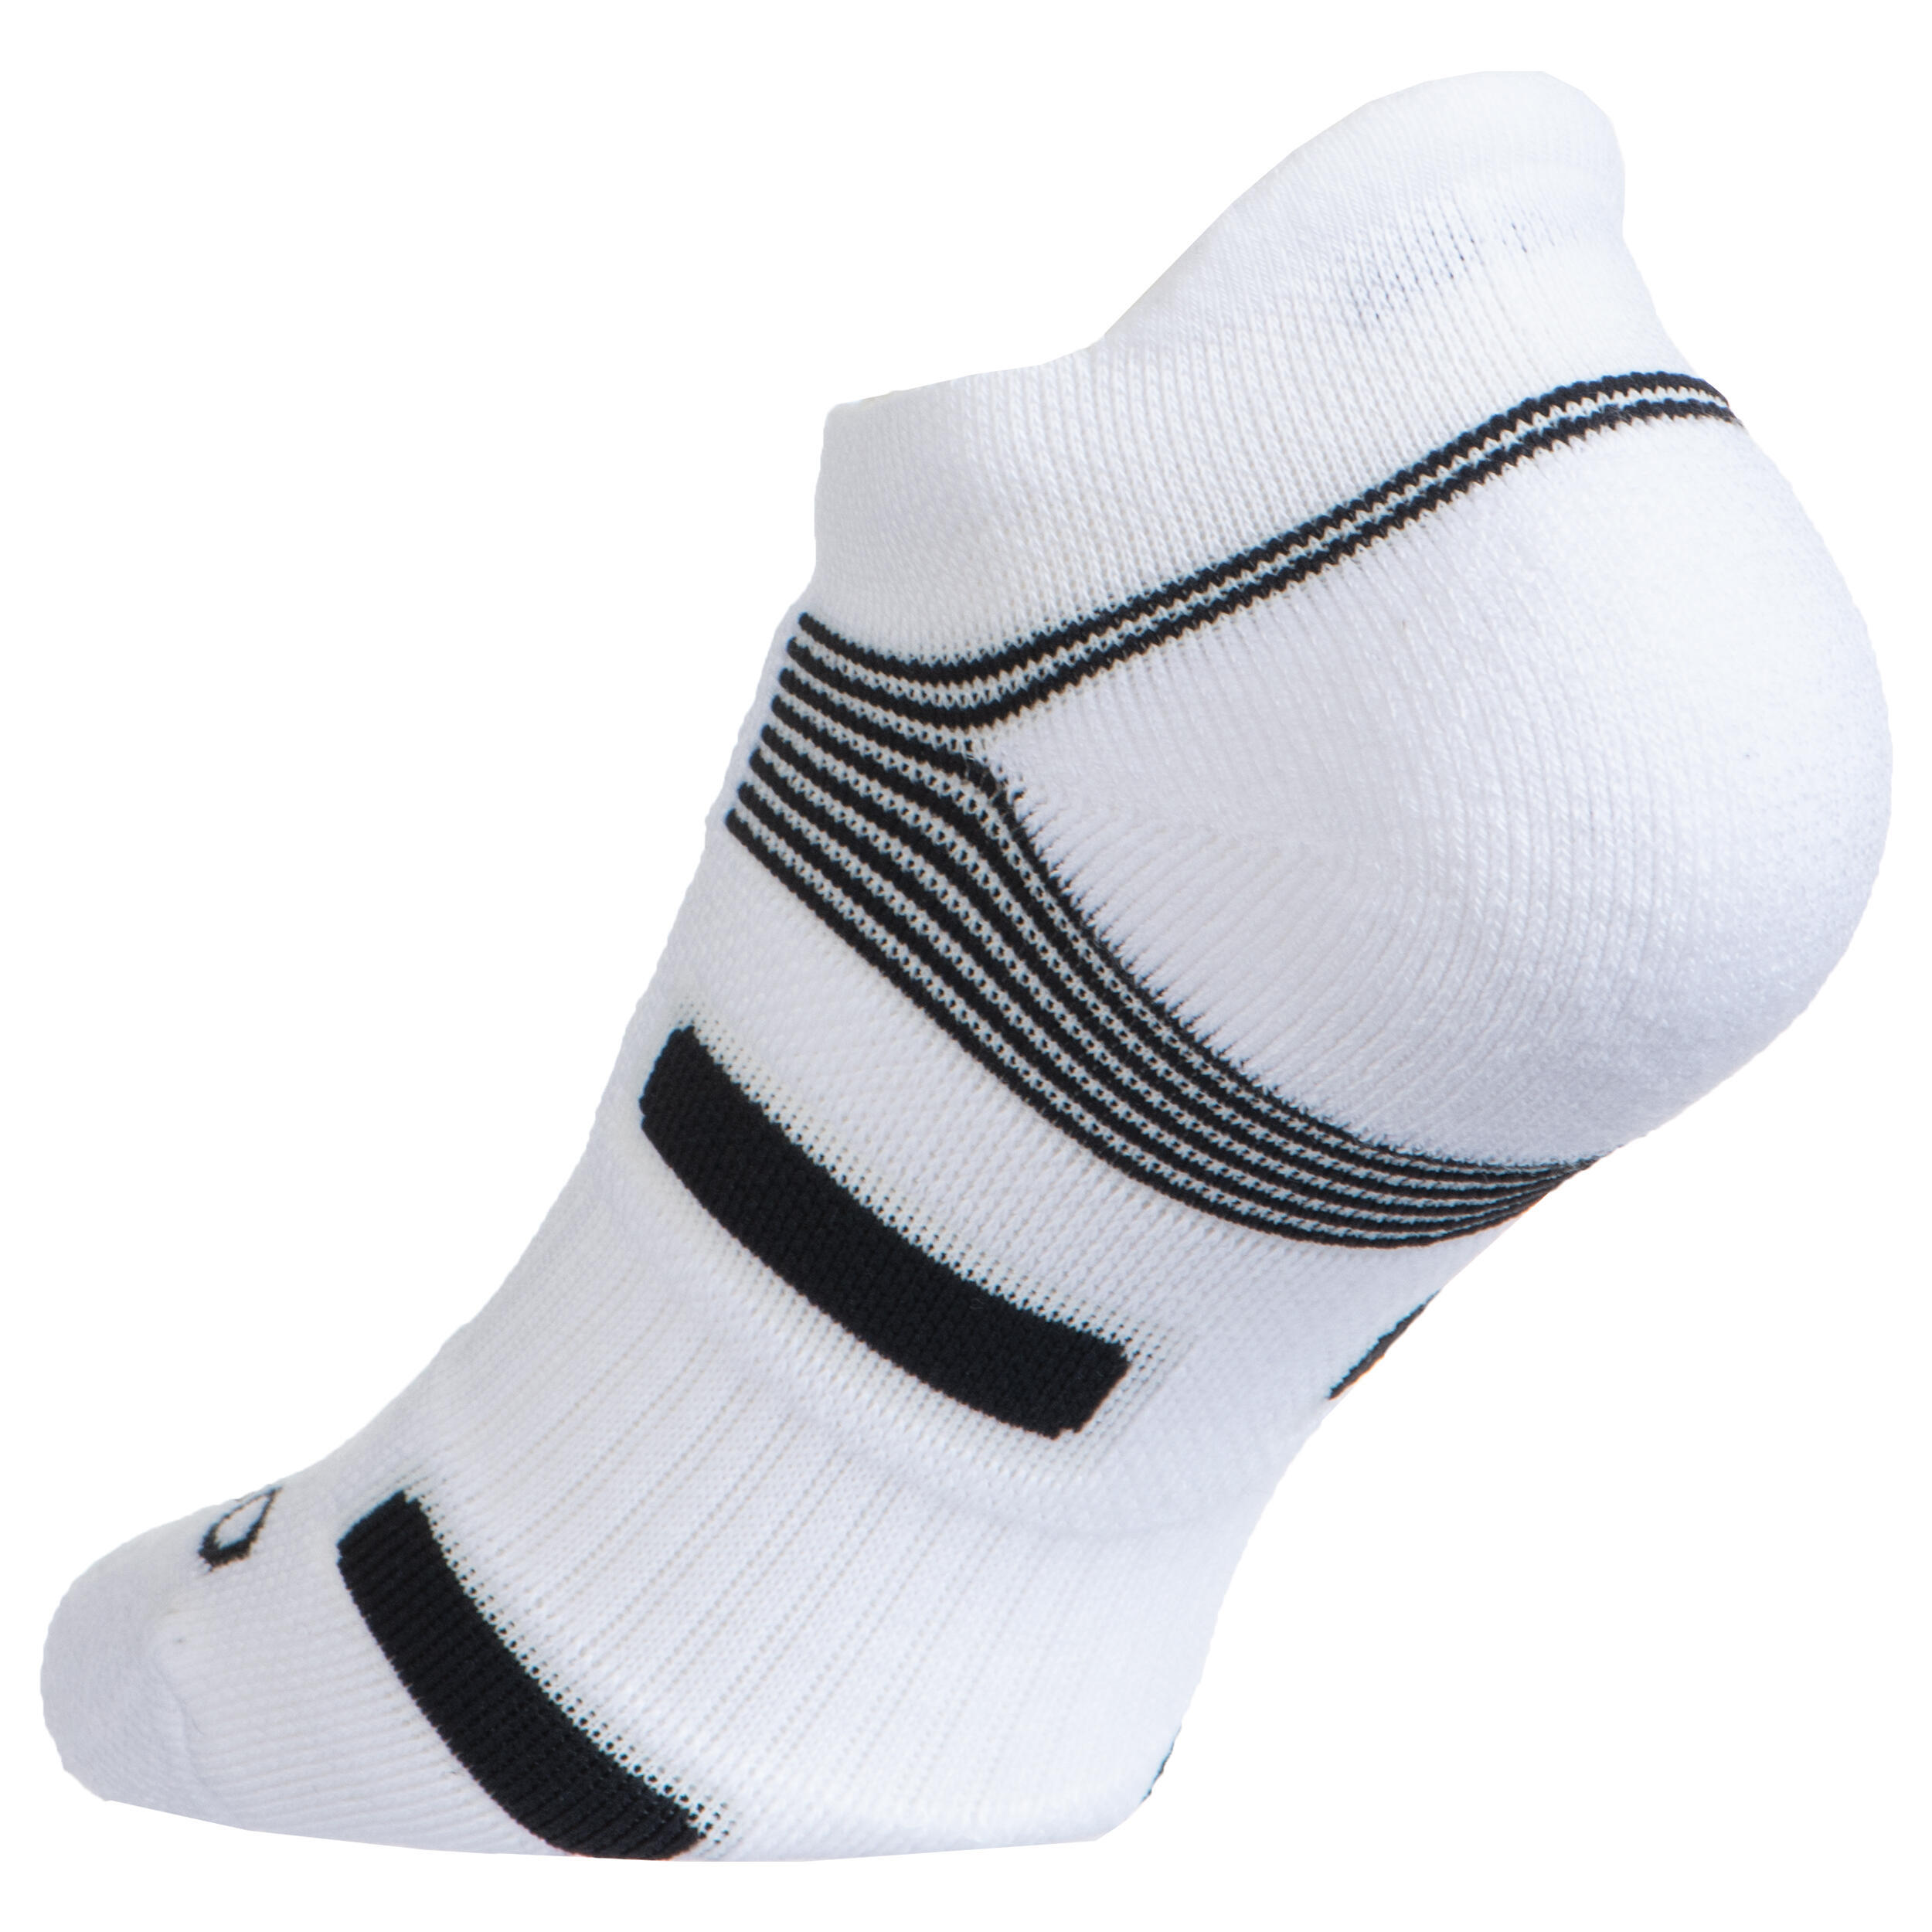 Low Tennis Socks RS 560 Tri-Pack - White/Black 3/8